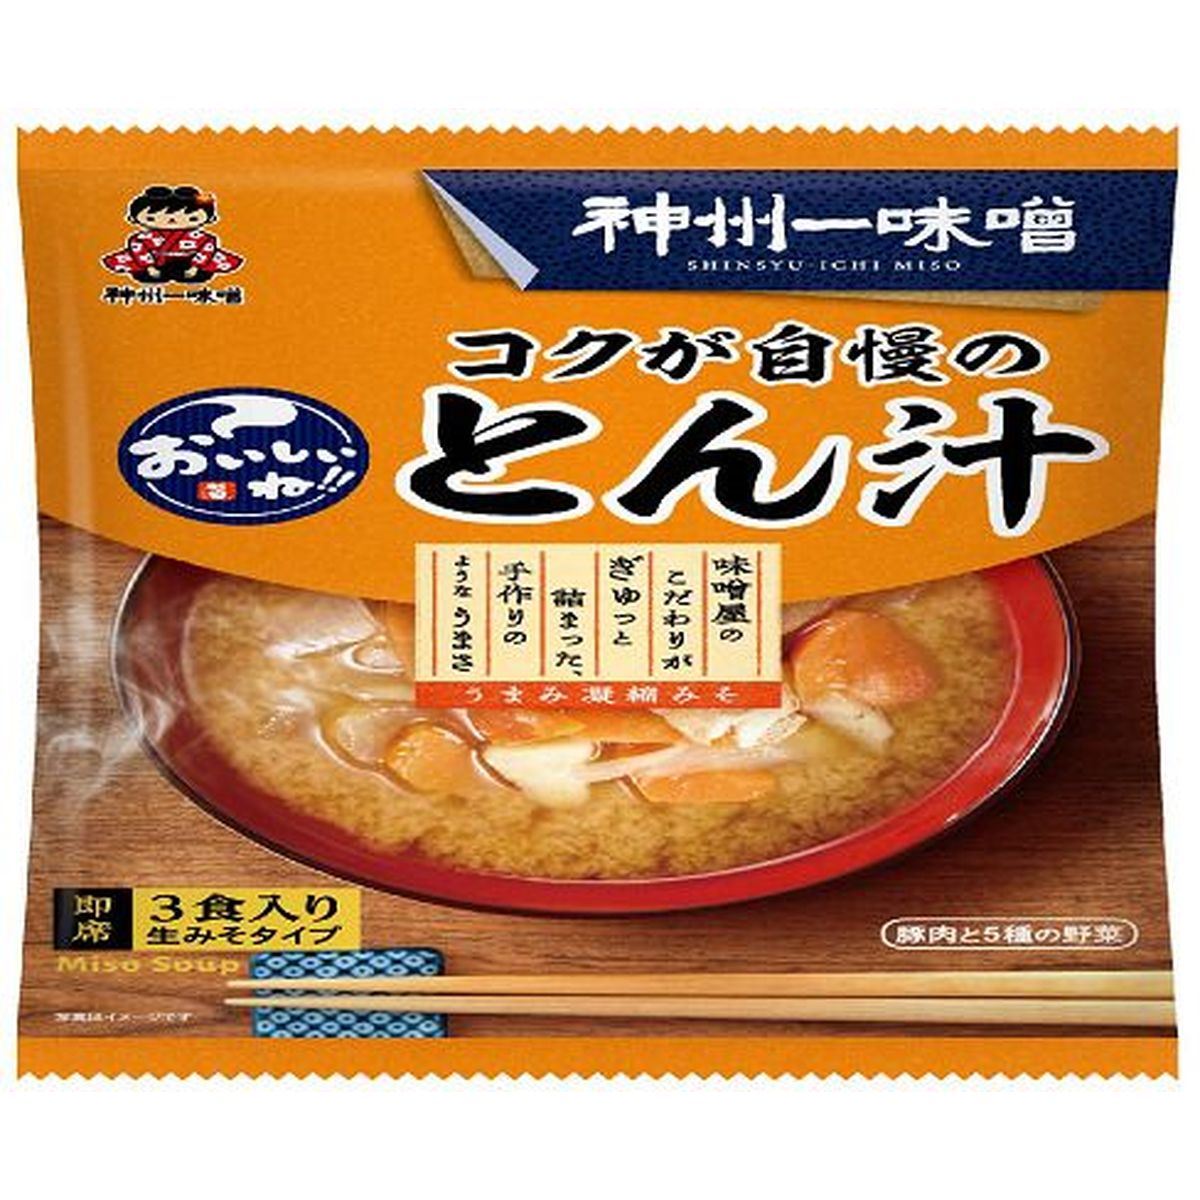 【12個入リ】神州一味噌 オイシイネコクガ自慢ノトン汁 3食